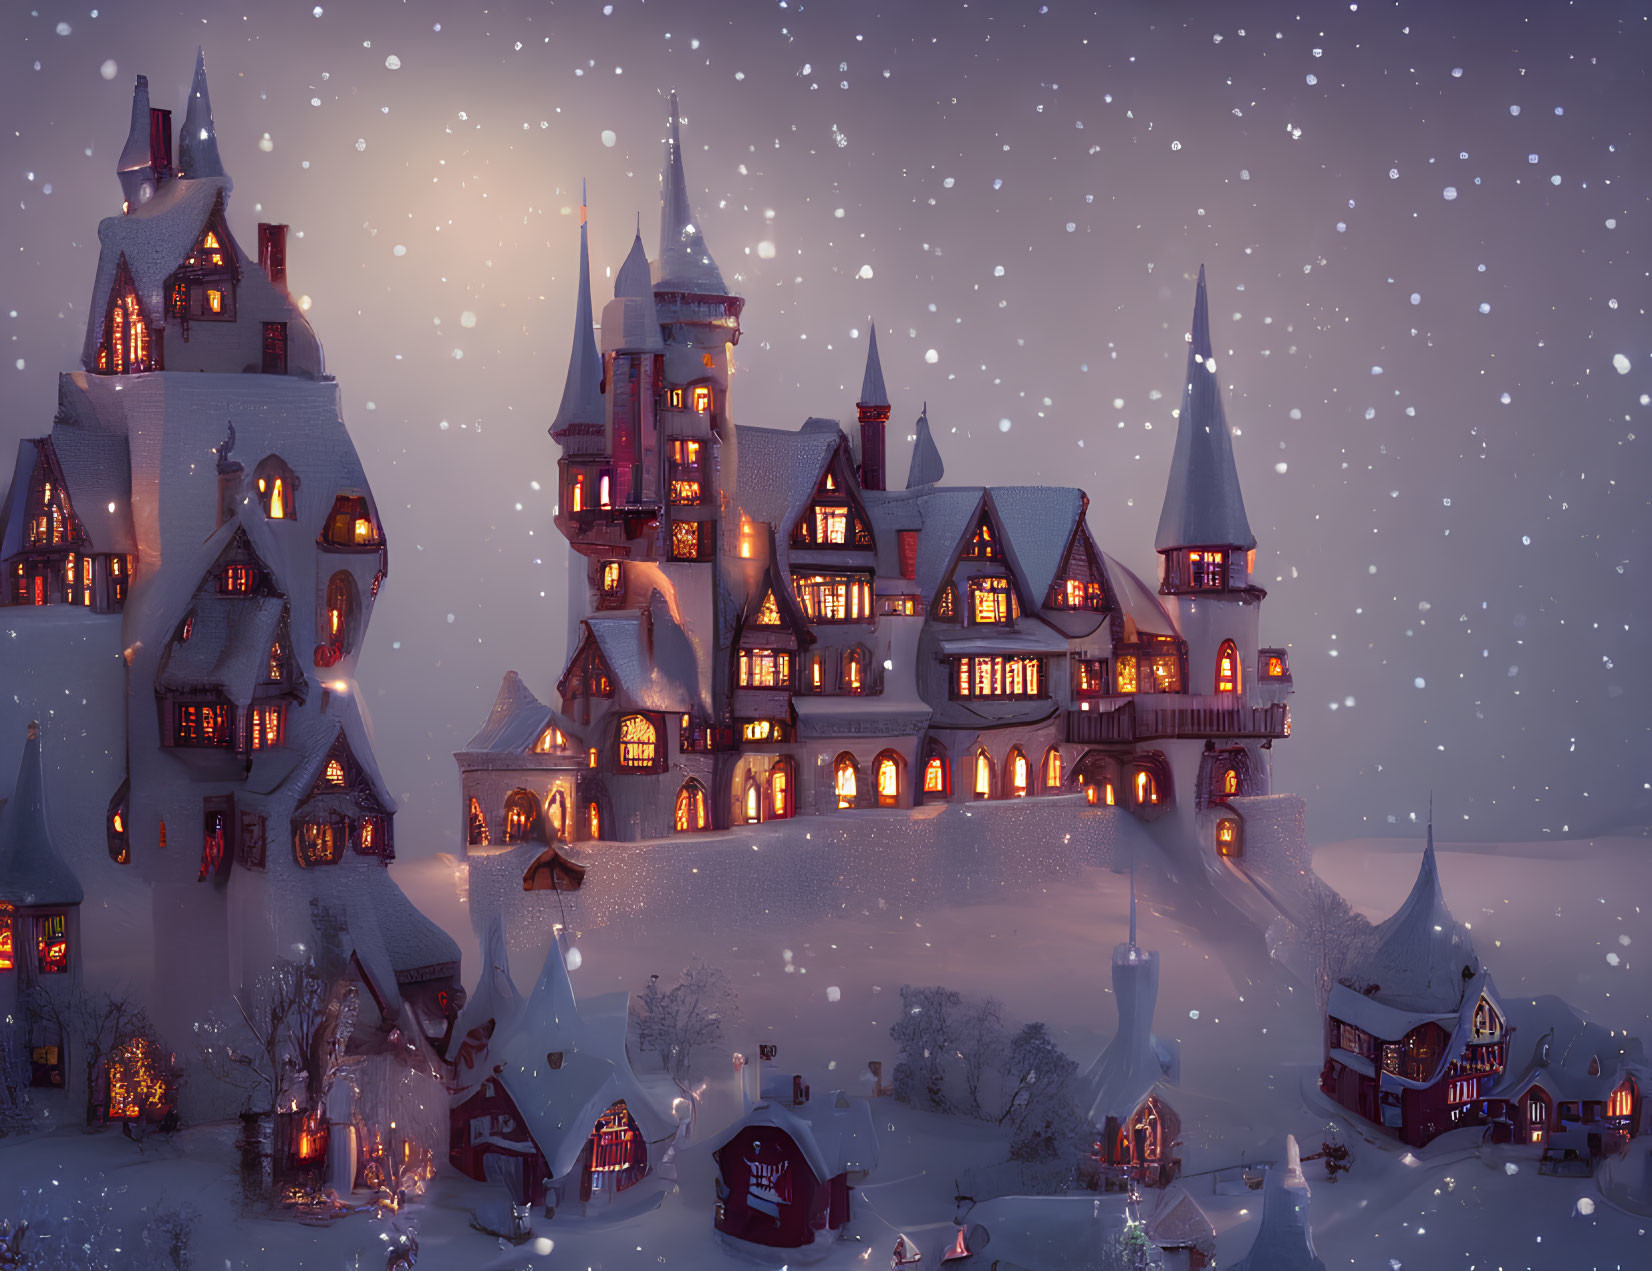 Snowy Dusk Scene: Large Illuminated Castle Among Small Houses